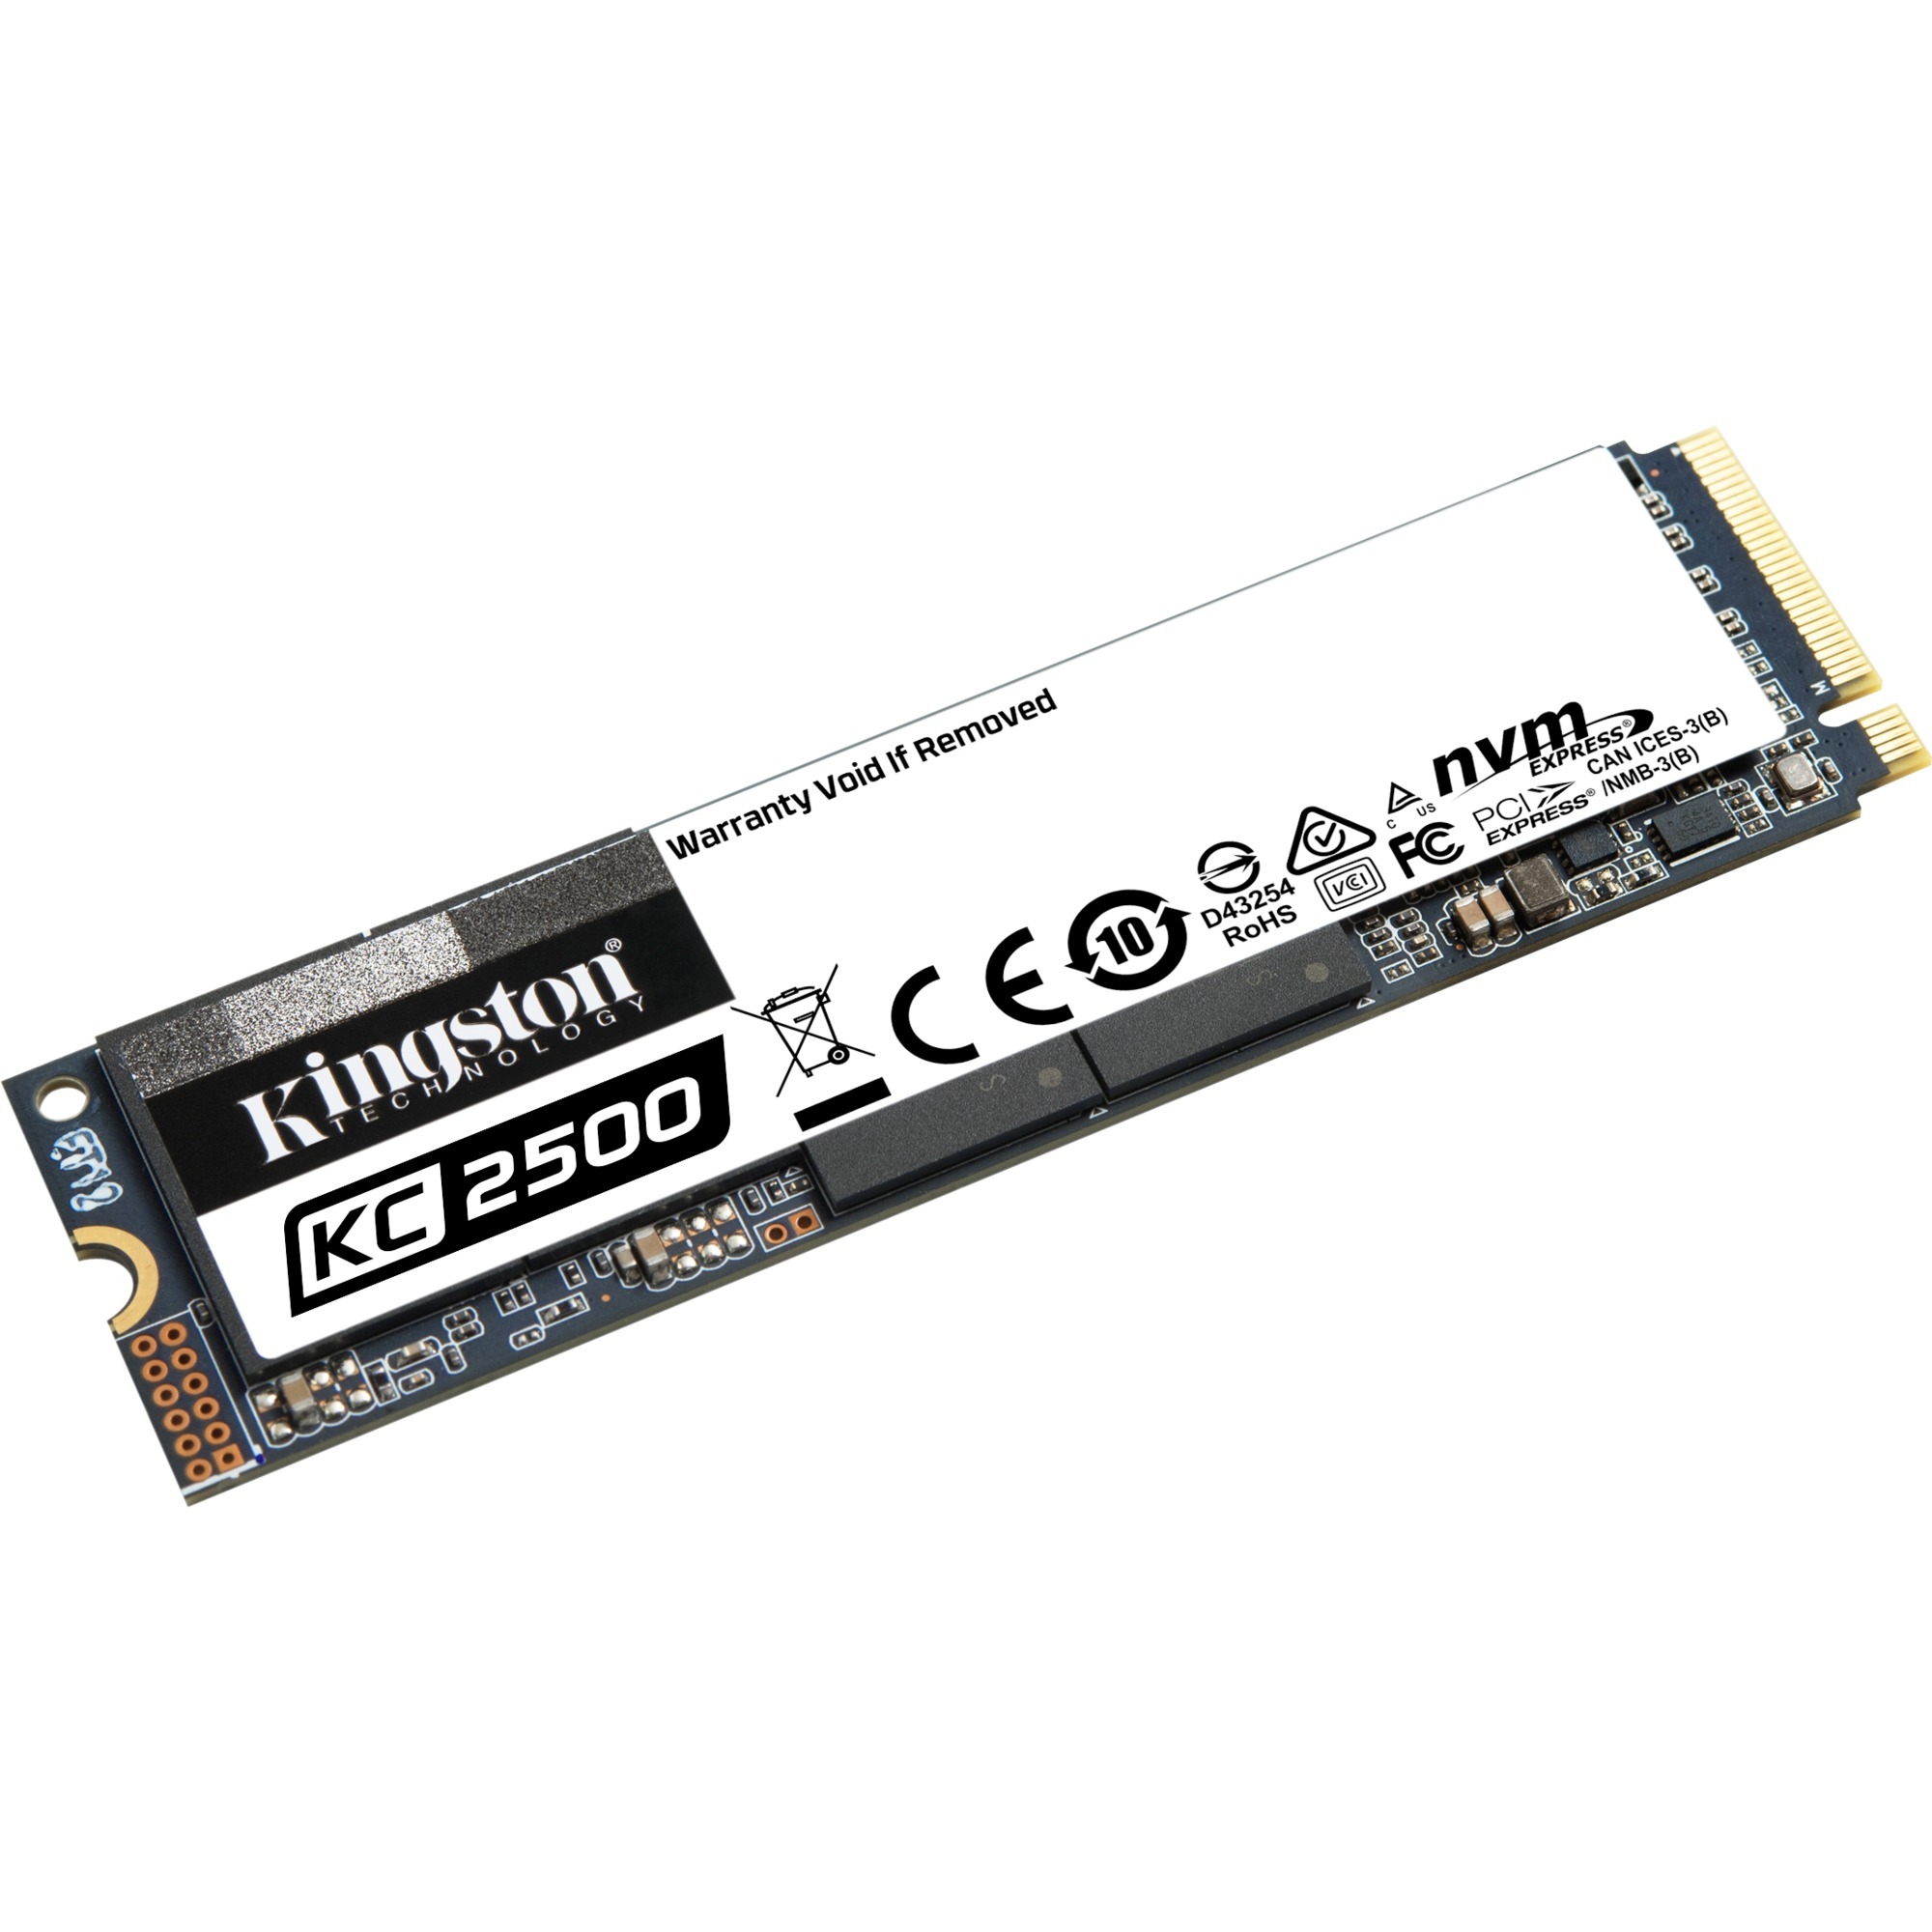 Image of Alternate - KC2500 2000 GB, SSD online einkaufen bei Alternate